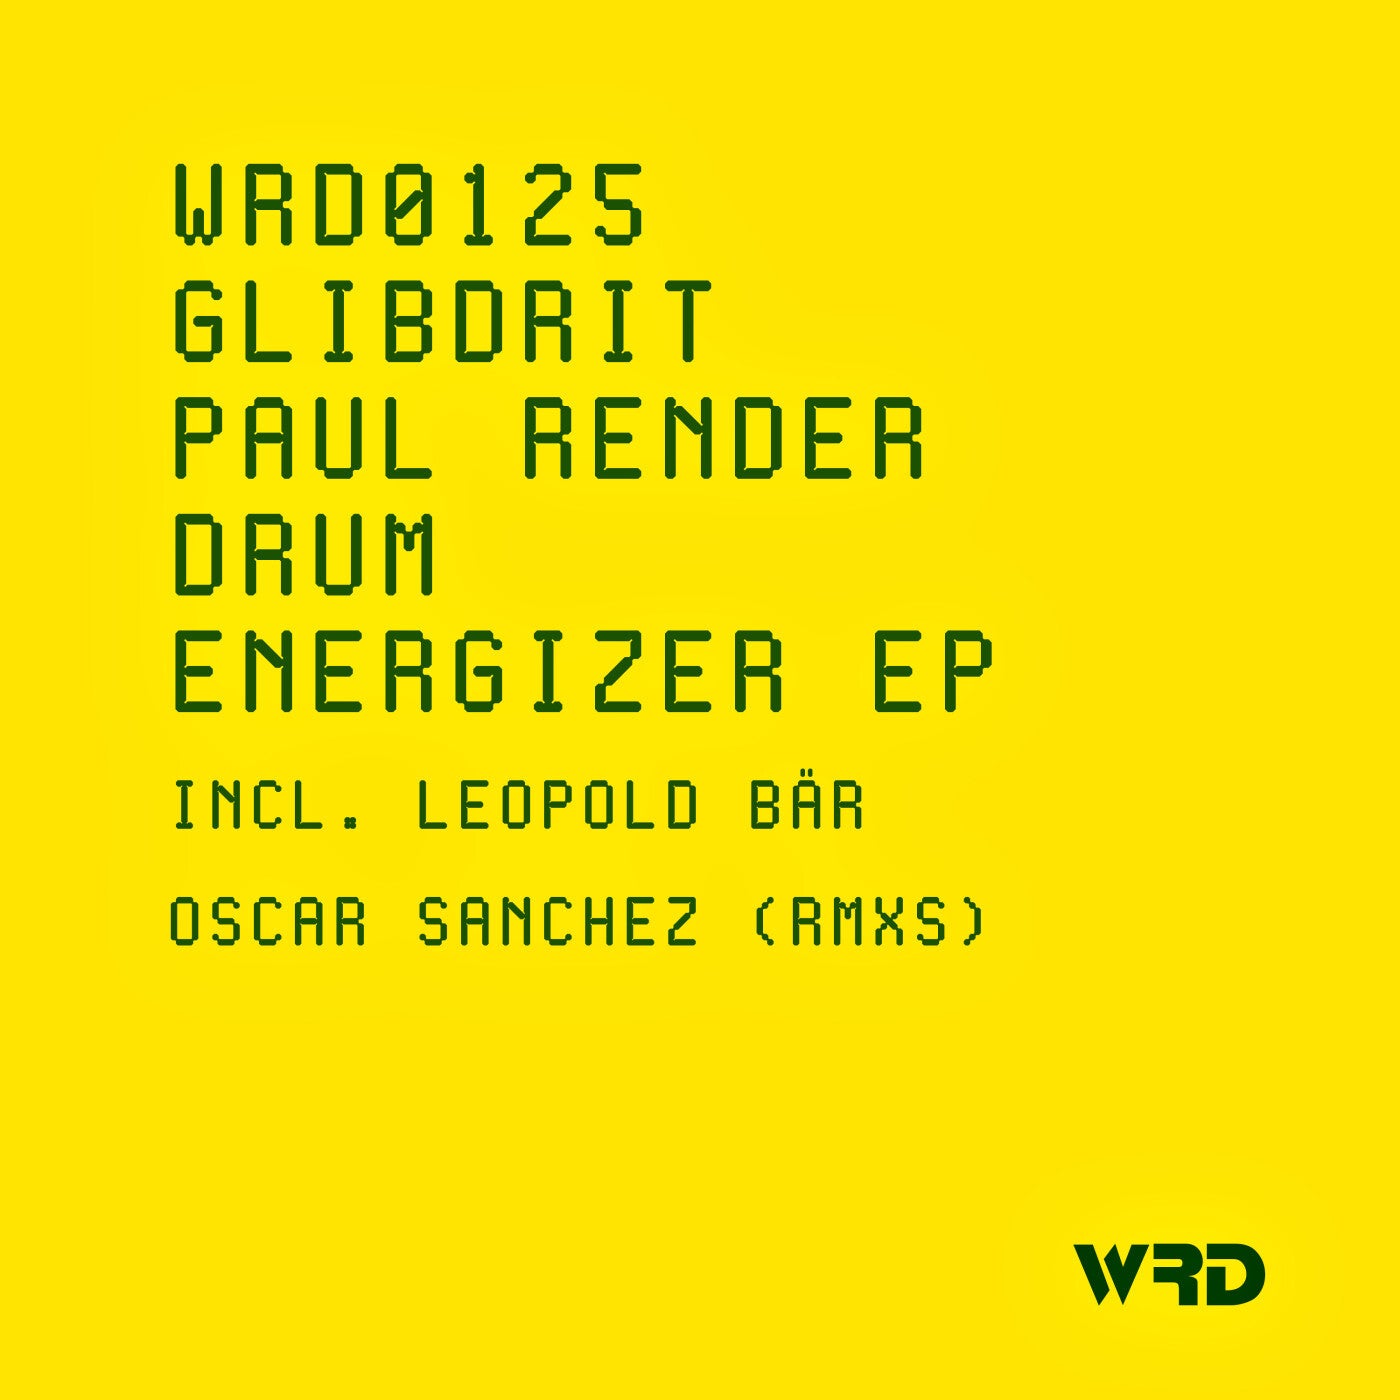 Cover - Paul Render, GliBDRIT - Drum Energizer (OSCAR SANCHEZ Remix)